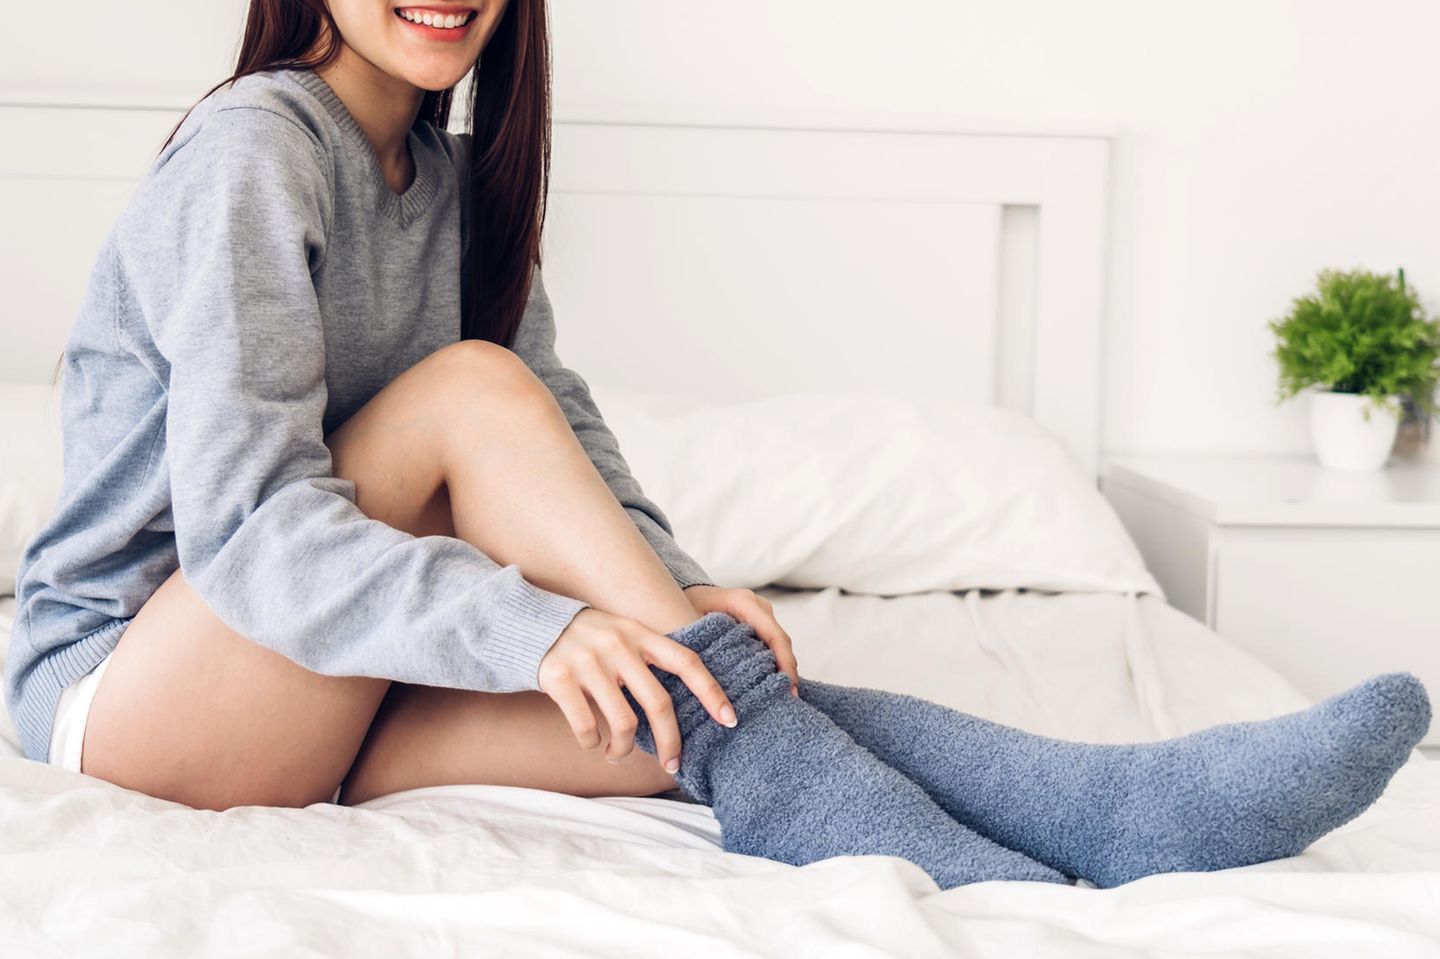 Eine junge Frau sitzt auf einem Bett und zieht sich dicke Socken an